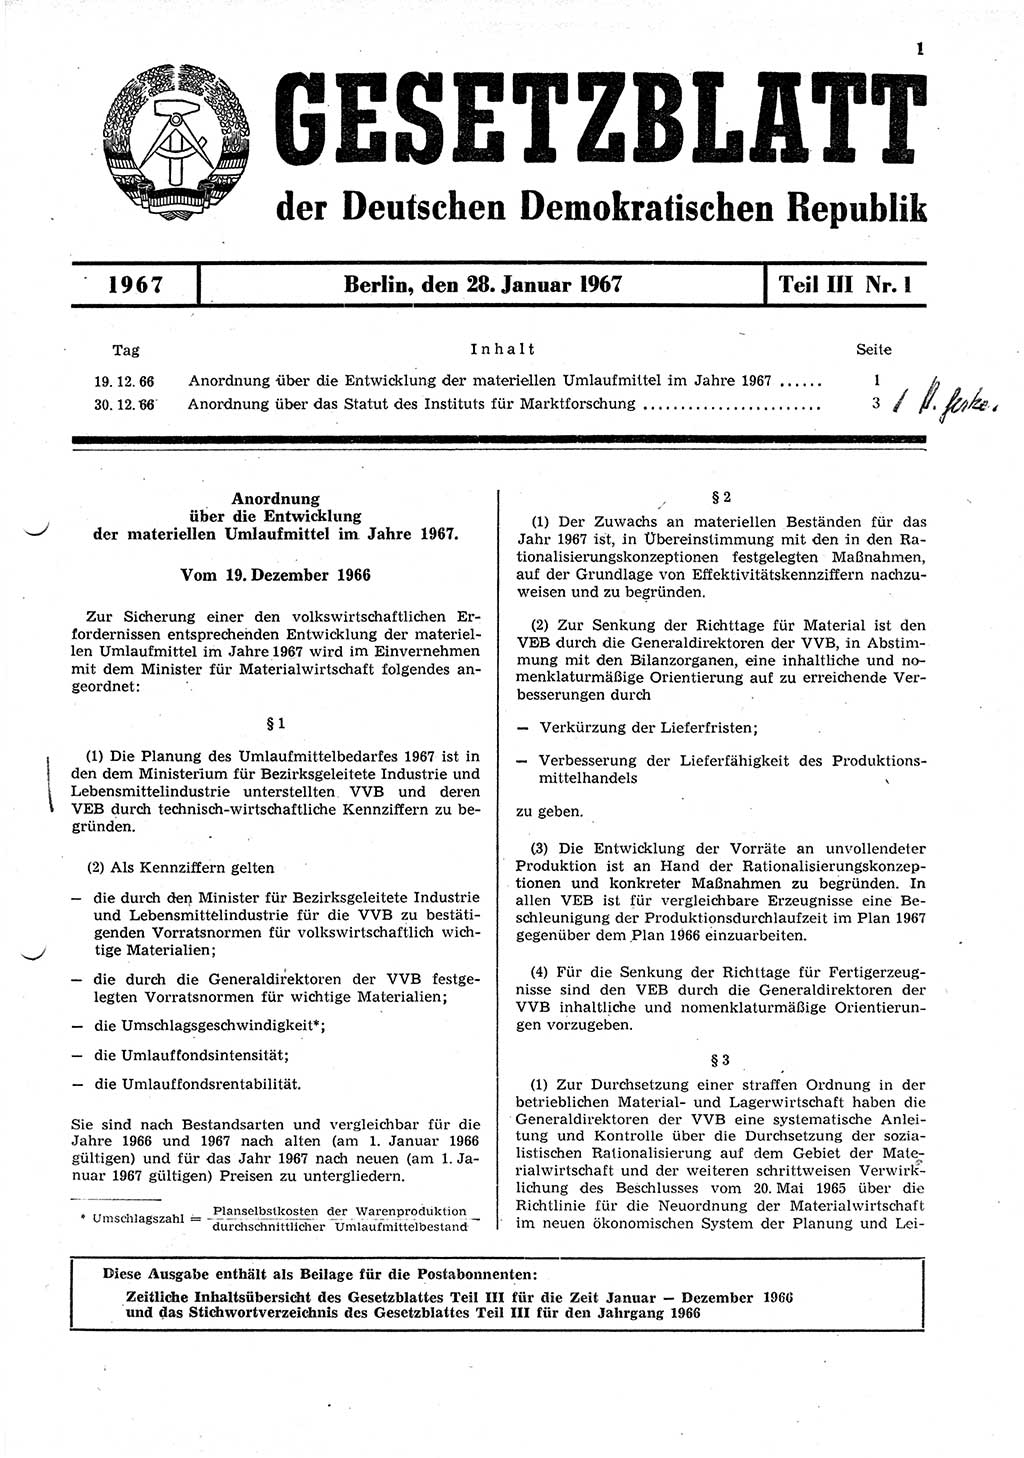 Gesetzblatt (GBl.) der Deutschen Demokratischen Republik (DDR) Teil ⅠⅠⅠ 1967, Seite 1 (GBl. DDR ⅠⅠⅠ 1967, S. 1)